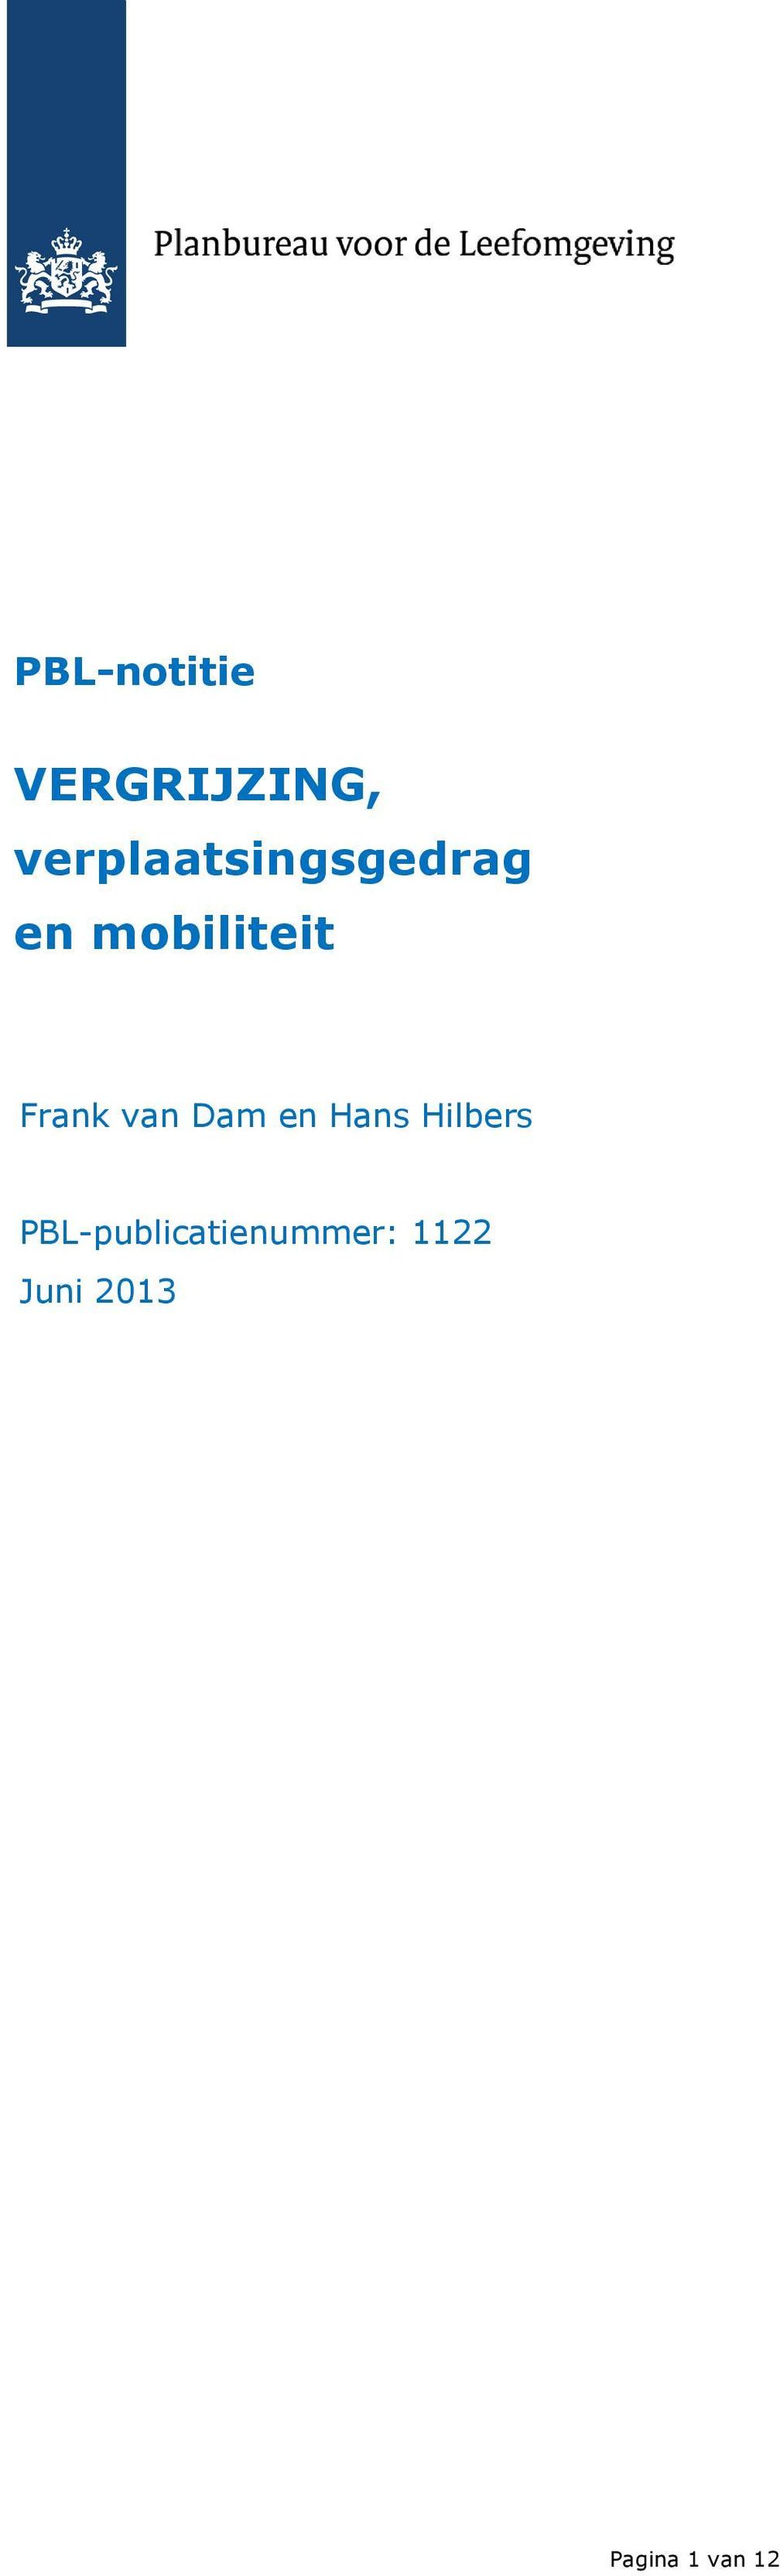 Frank van Dam en Hans Hilbers